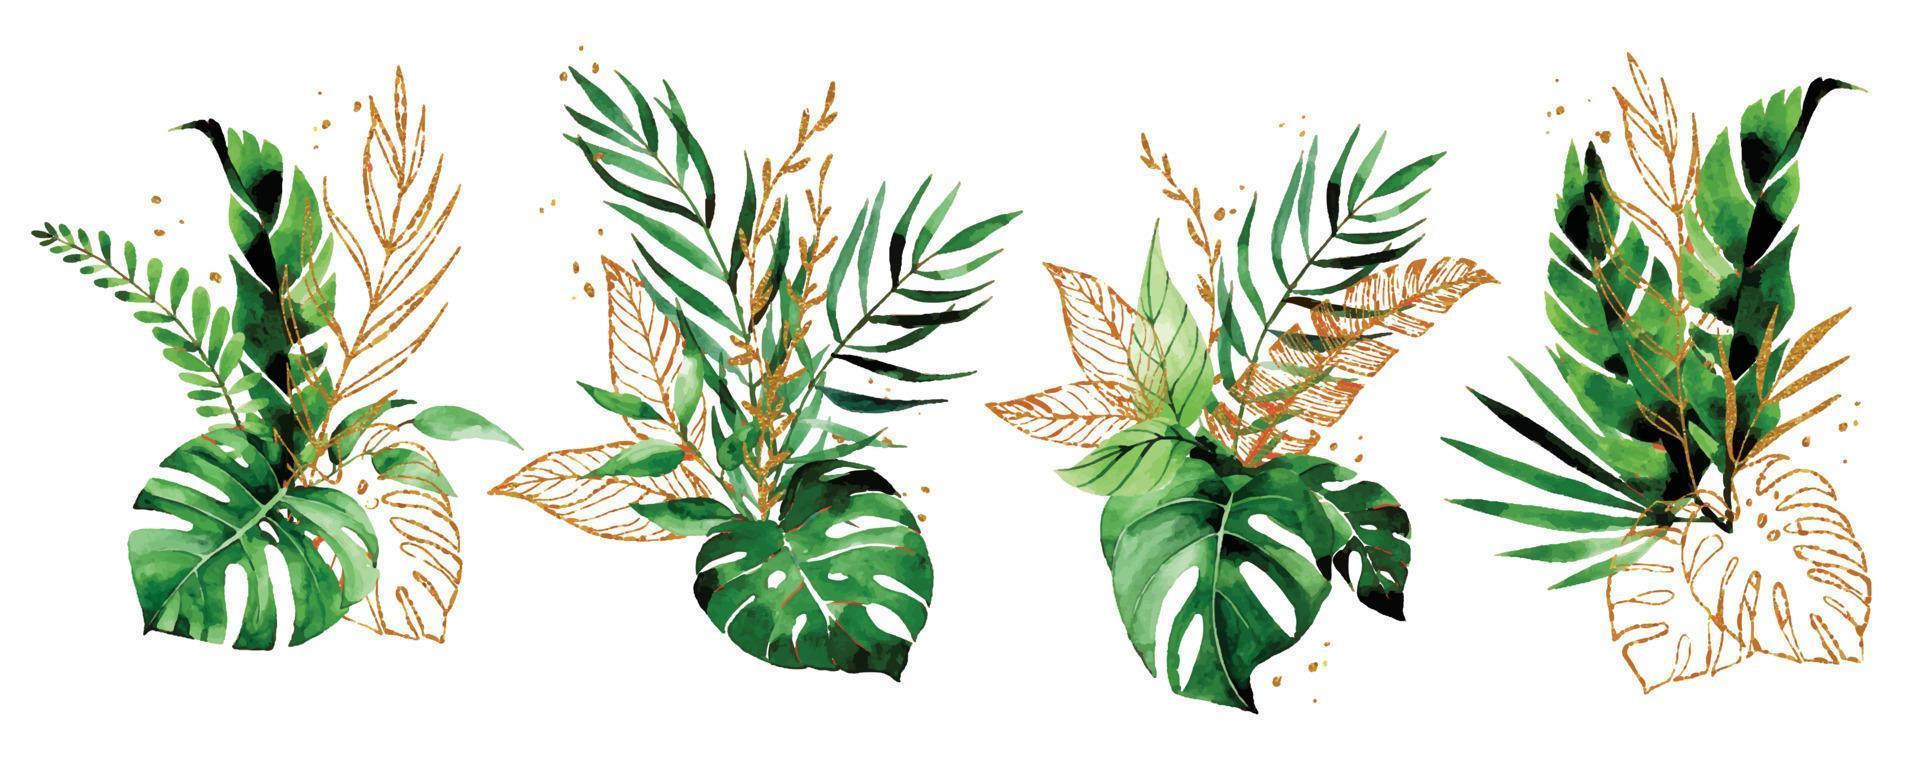 aquarel tekening. set boeketten, composities van tropische bladeren en gouden elementen. groene en gouden bladeren van palm, monstera. vintage-stijl vector